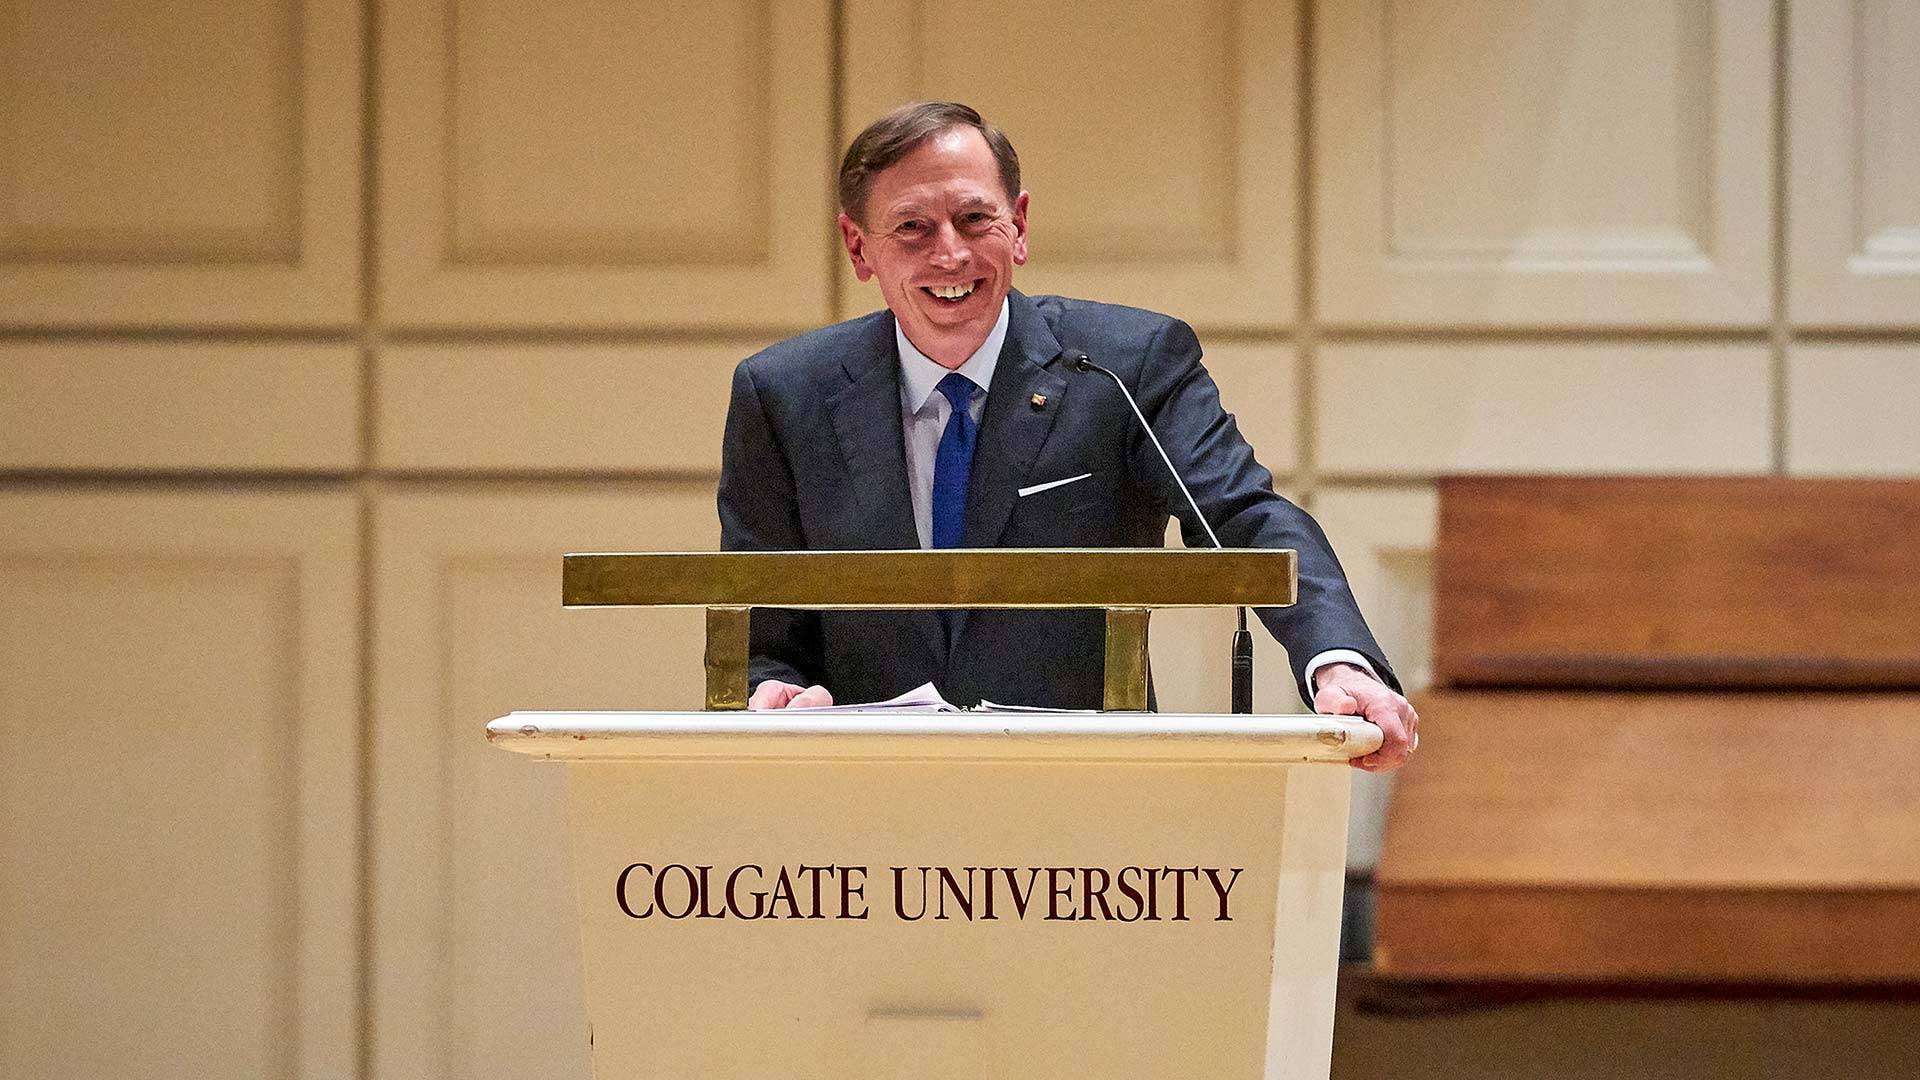 General David Petraeus at Colgate University podium in Memorial Chapel